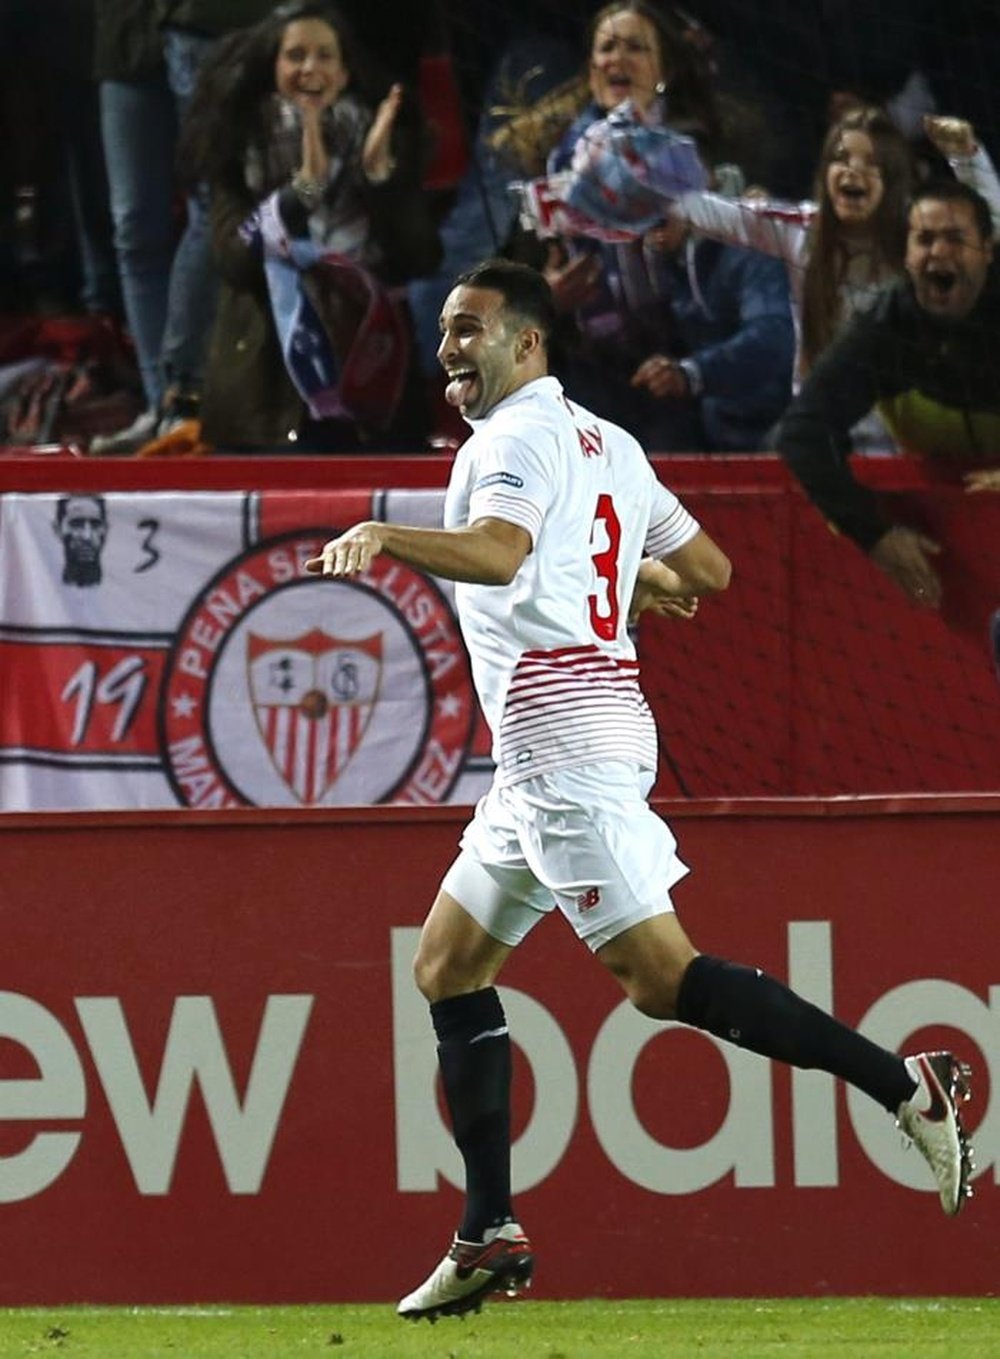 El defensa francés del Sevilla FC Adil Rami celebra su gol, primero del equipo frente al Celta de Vigo, durante el partido de ida de las semifinales de la Copa del Rey en el estadio Ramón Sánchez Pizjuán, en Sevilla. EFE